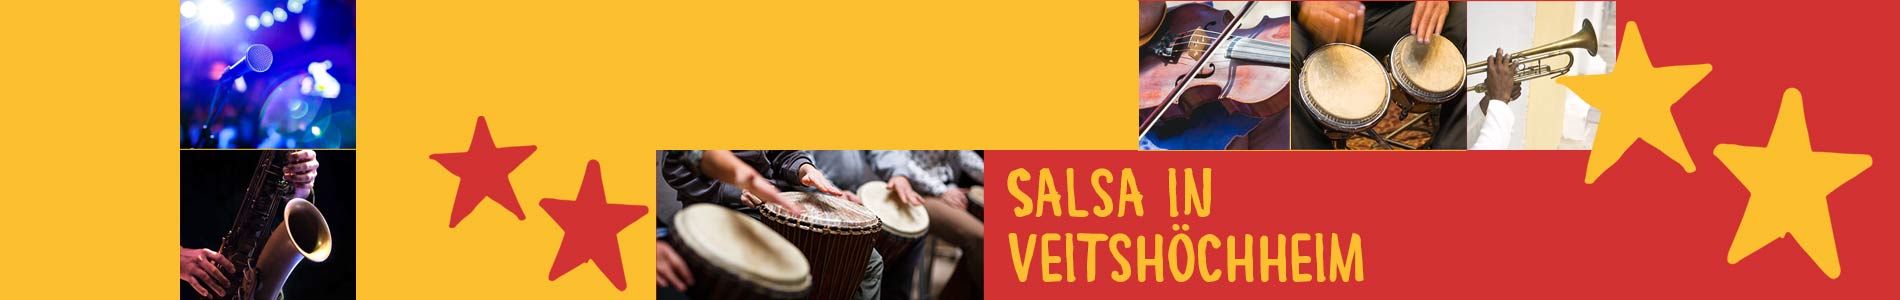 Salsa in Veitshöchheim – Salsa lernen und tanzen, Tanzkurse, Partys, Veranstaltungen